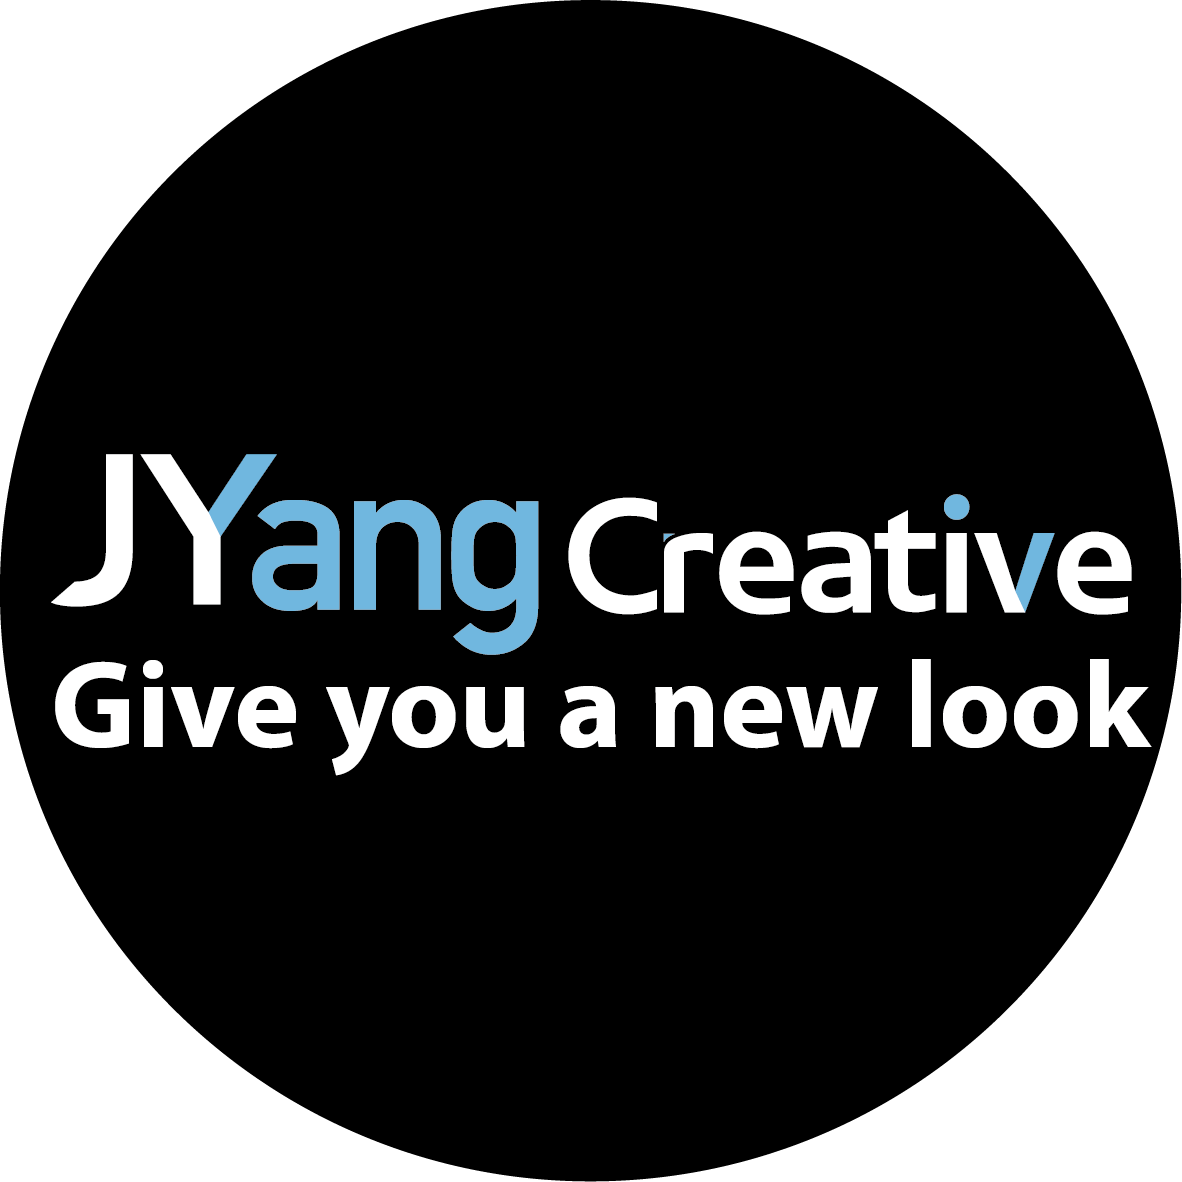 Juyang Creative